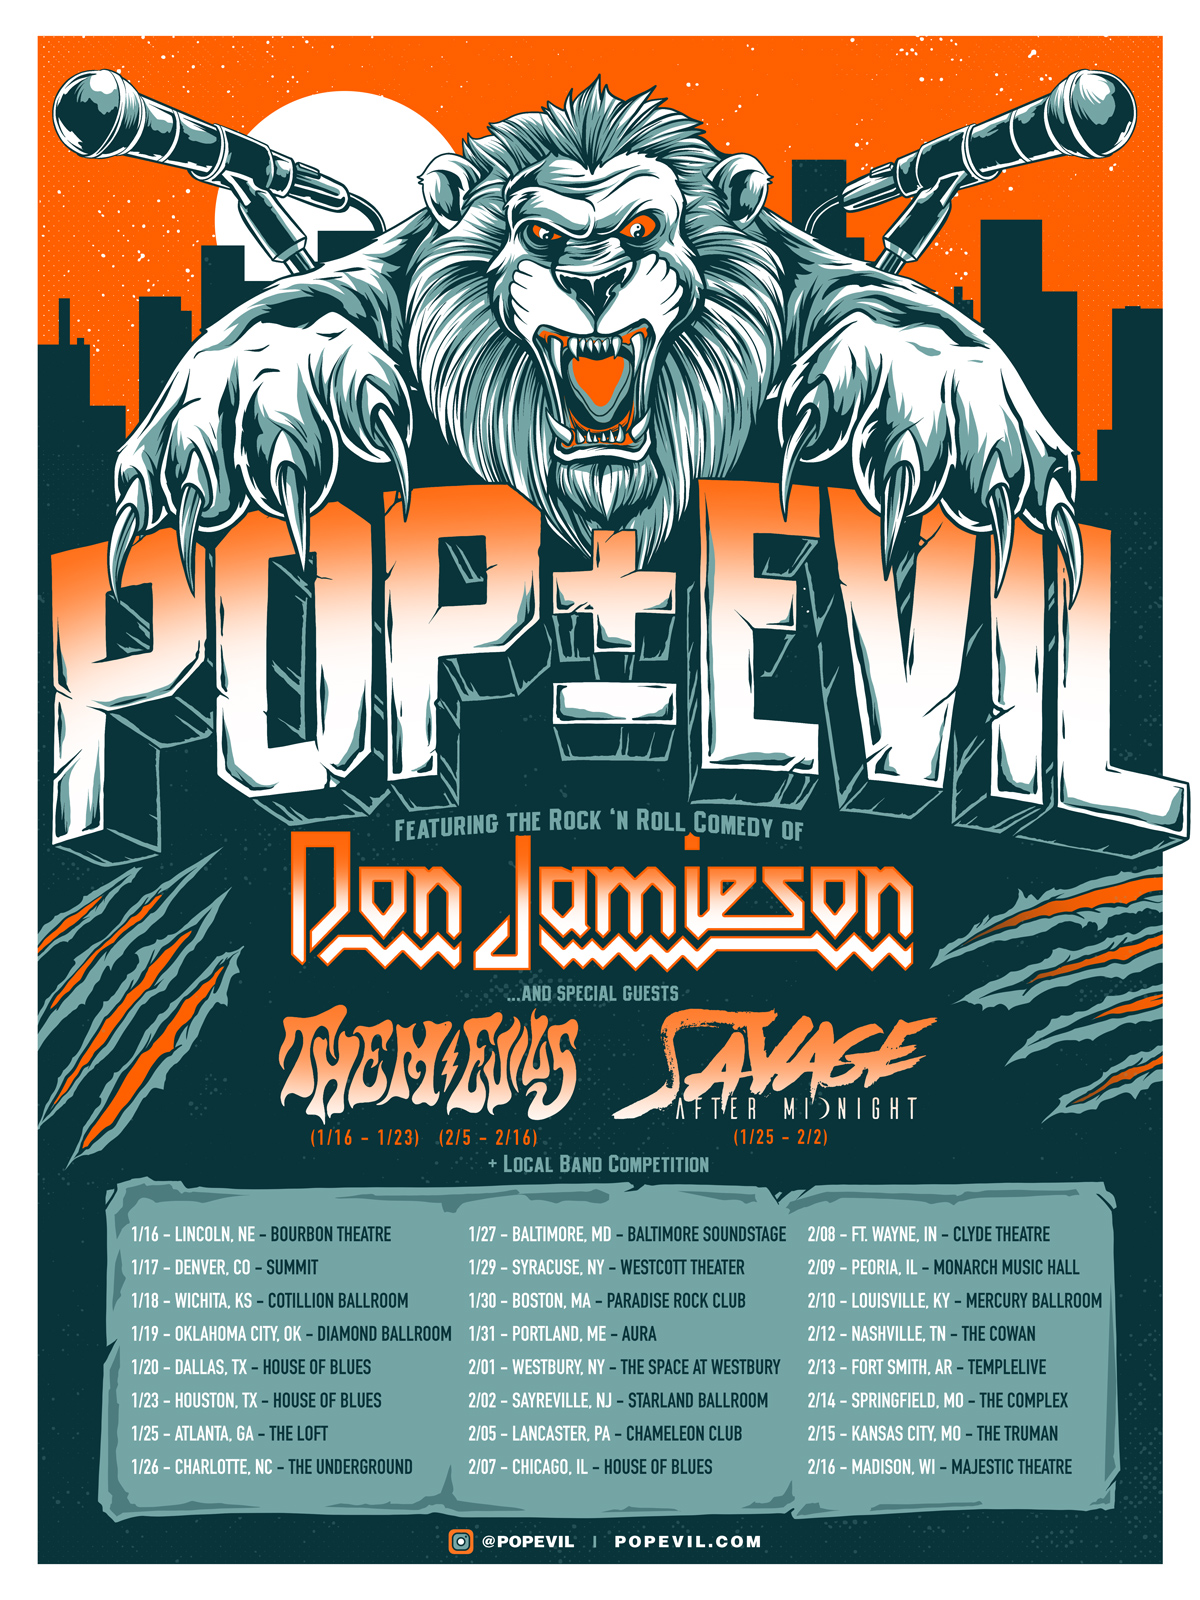 will pop evil tour again